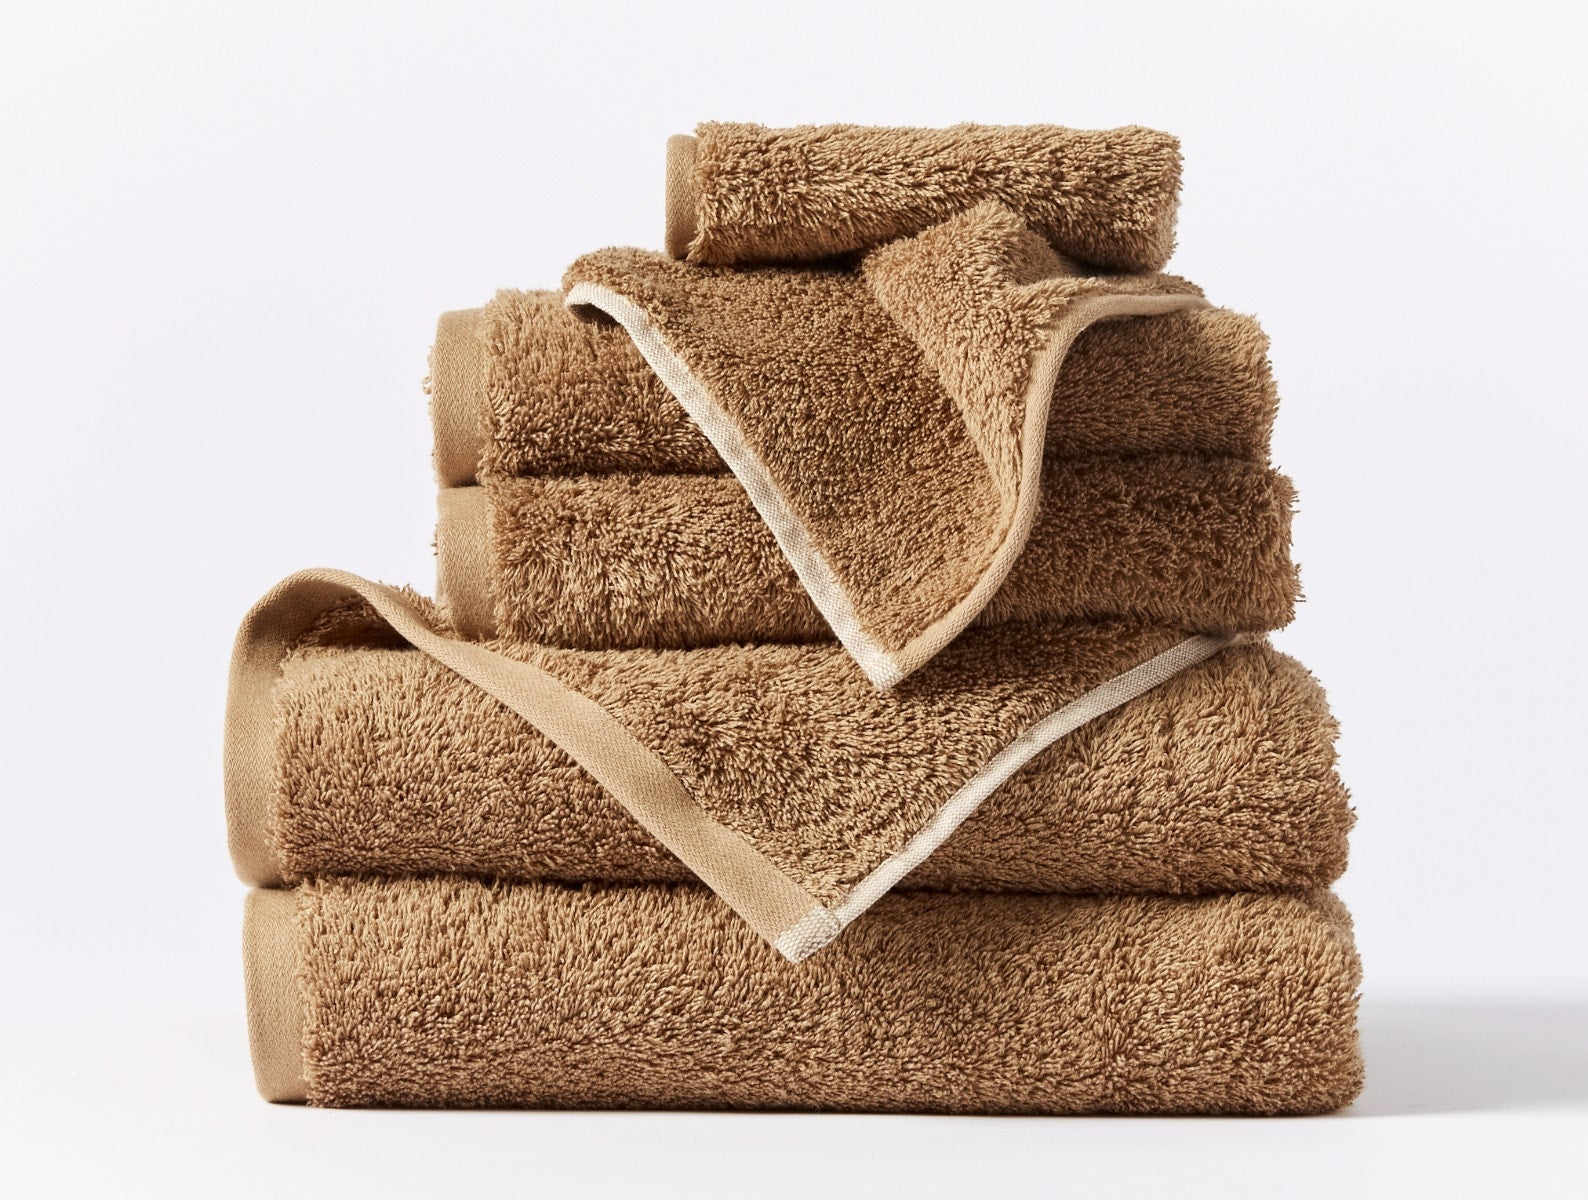 100% Cotton Towel Set